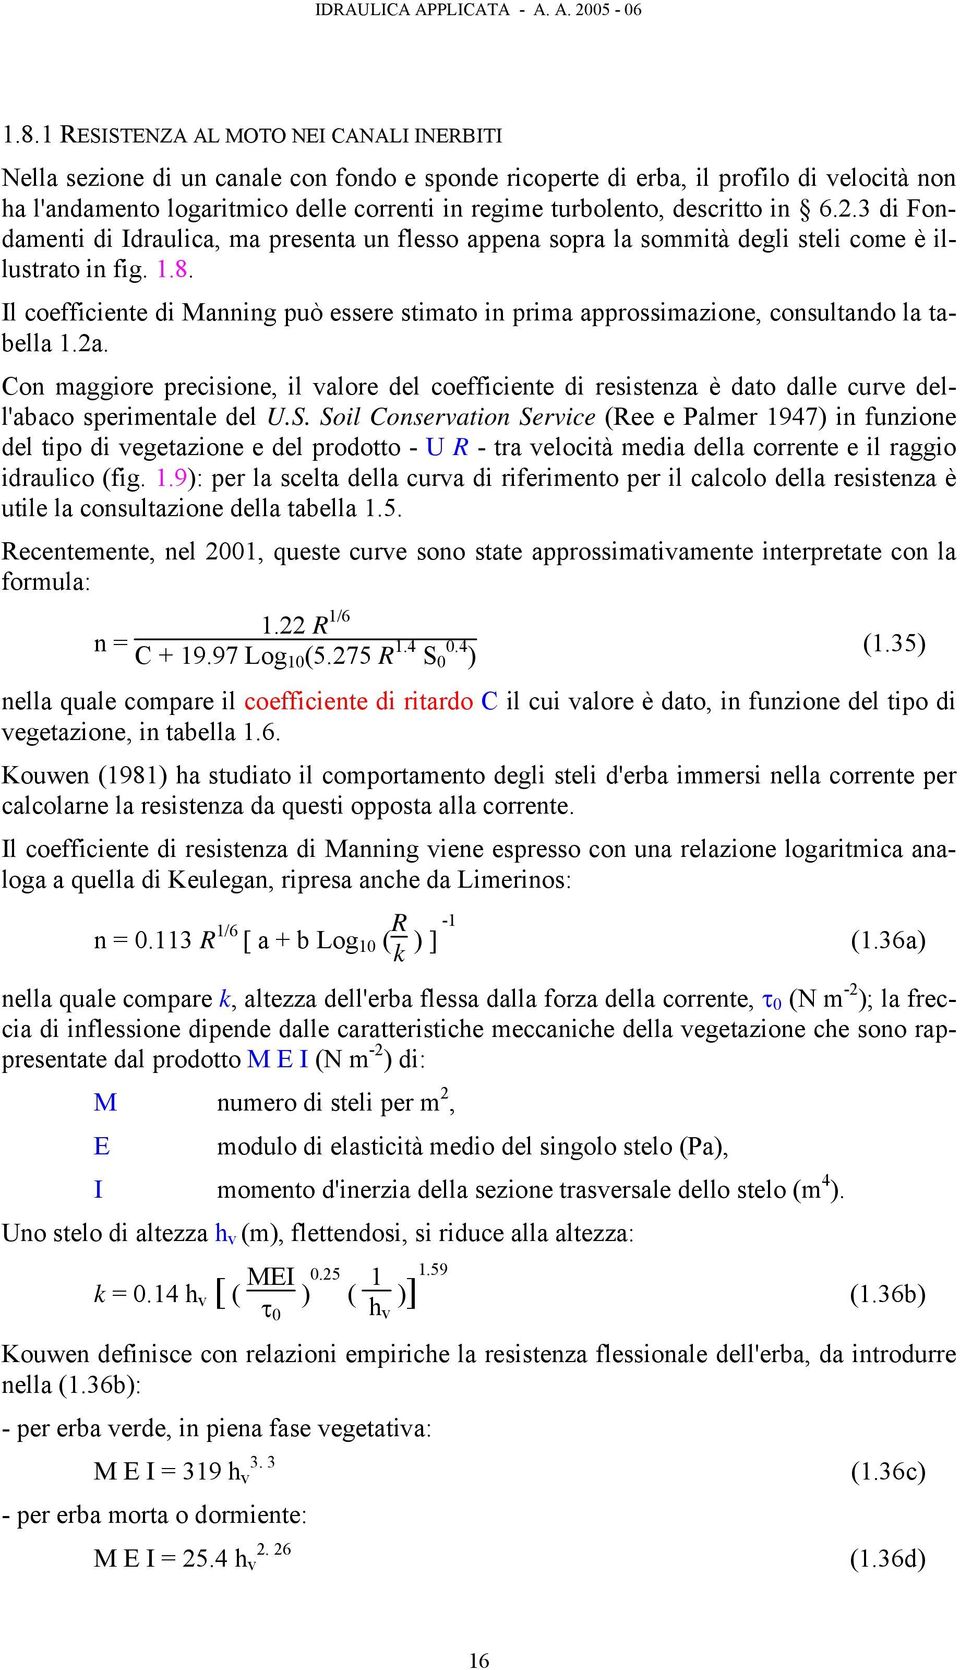 Il coefficiente di Manning può essere stimato in prima approssimazione, consultando la tabella 1.2a.